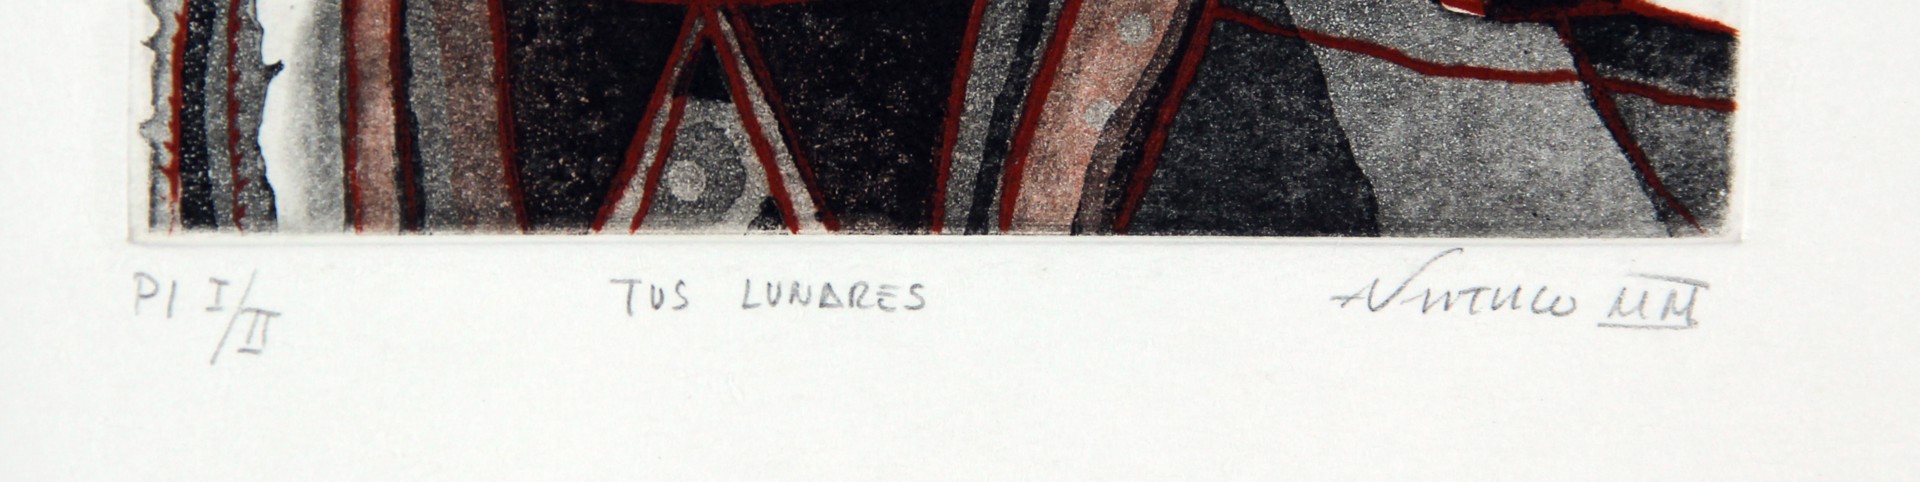 Tus Lunares (Your Moles) by Álvaro Santiago